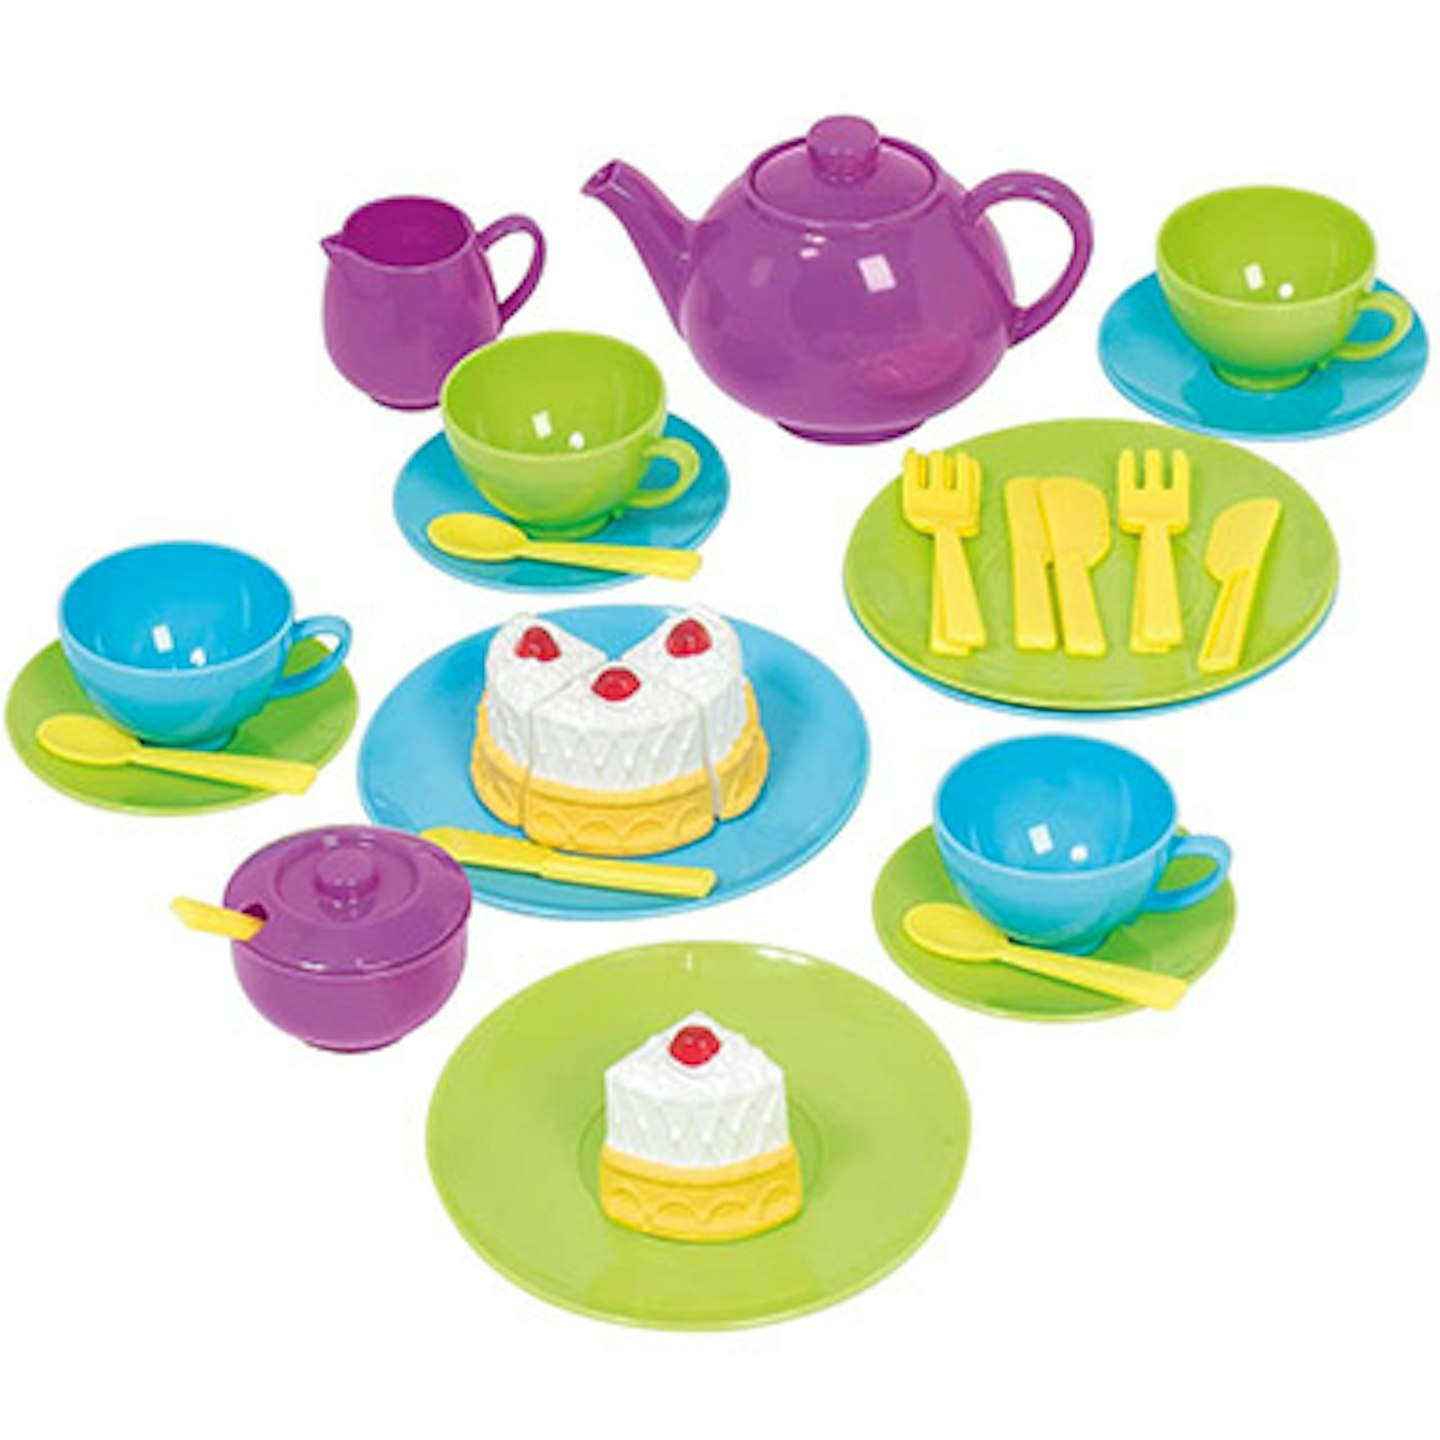 Toy Tea Party Set